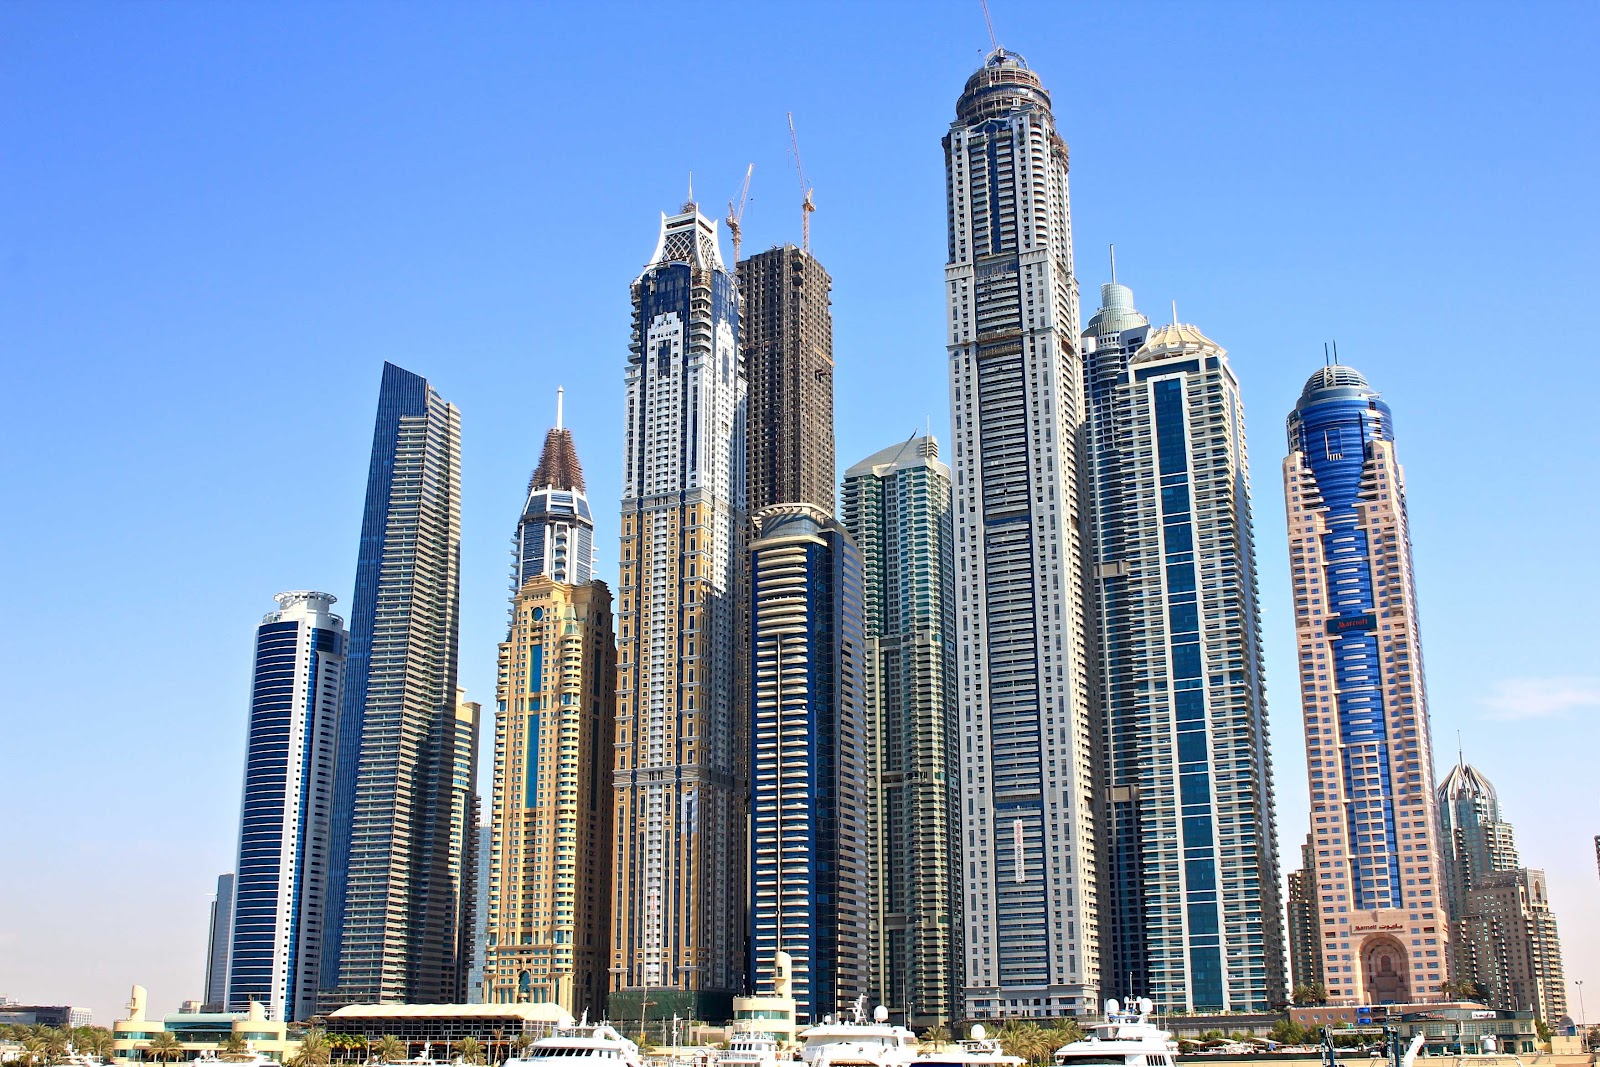 
Цены на элитную недвижимость в Дубае практически прекратили свой рост